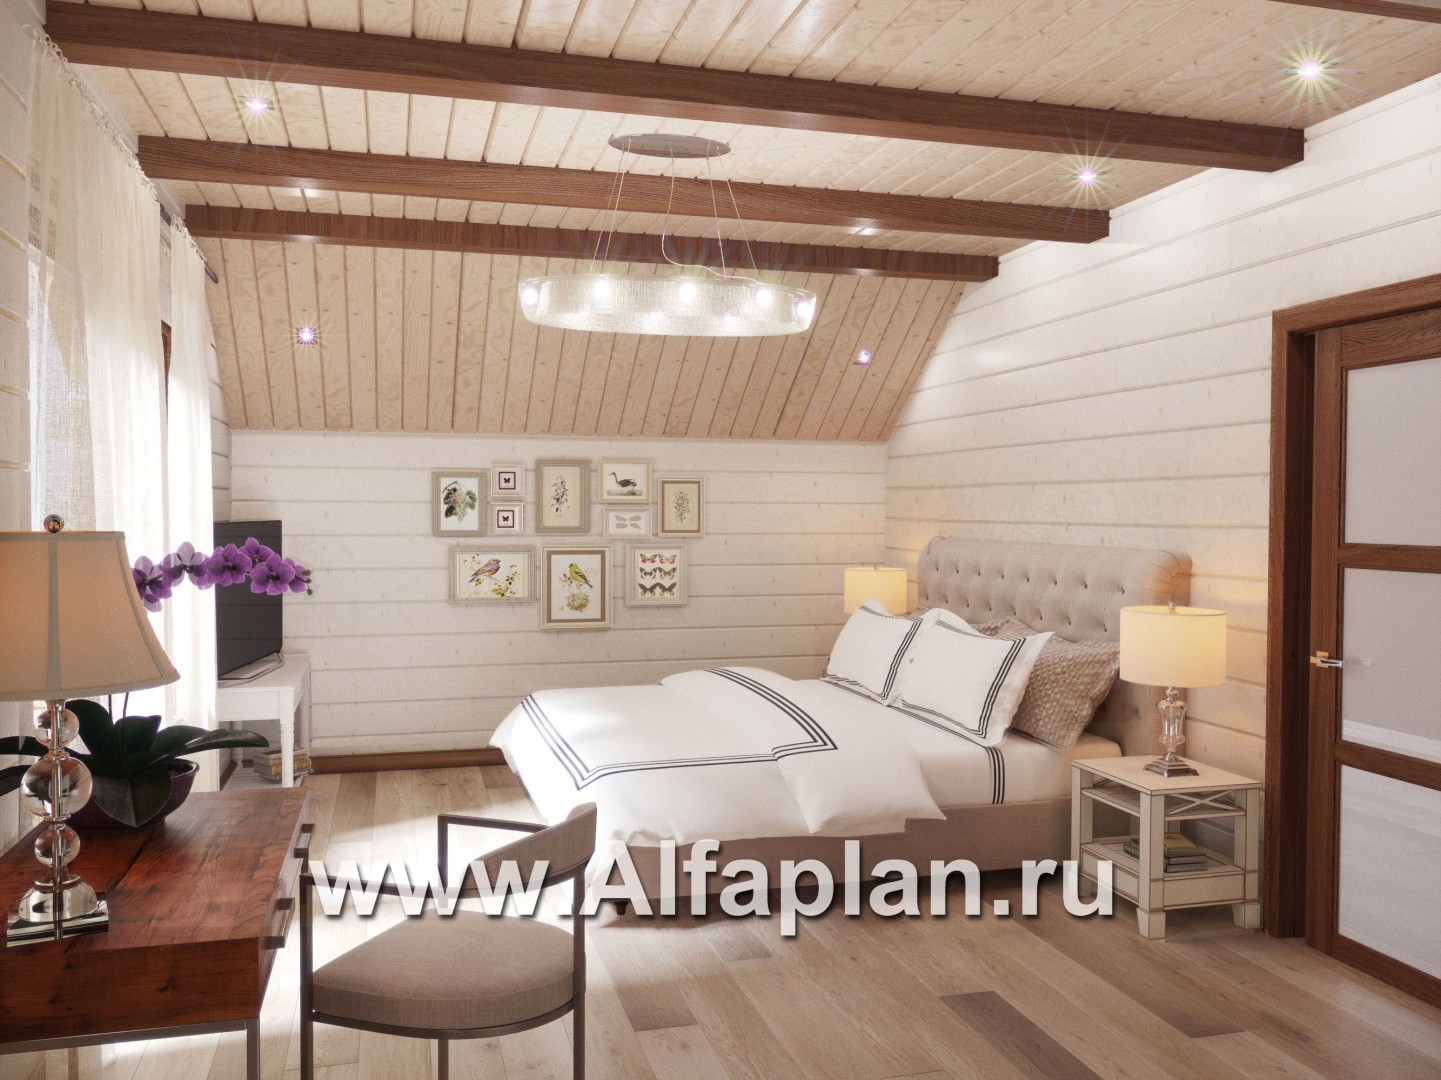 Проекты домов Альфаплан - Проект комфортабельного дома из бруса - дополнительное изображение №5